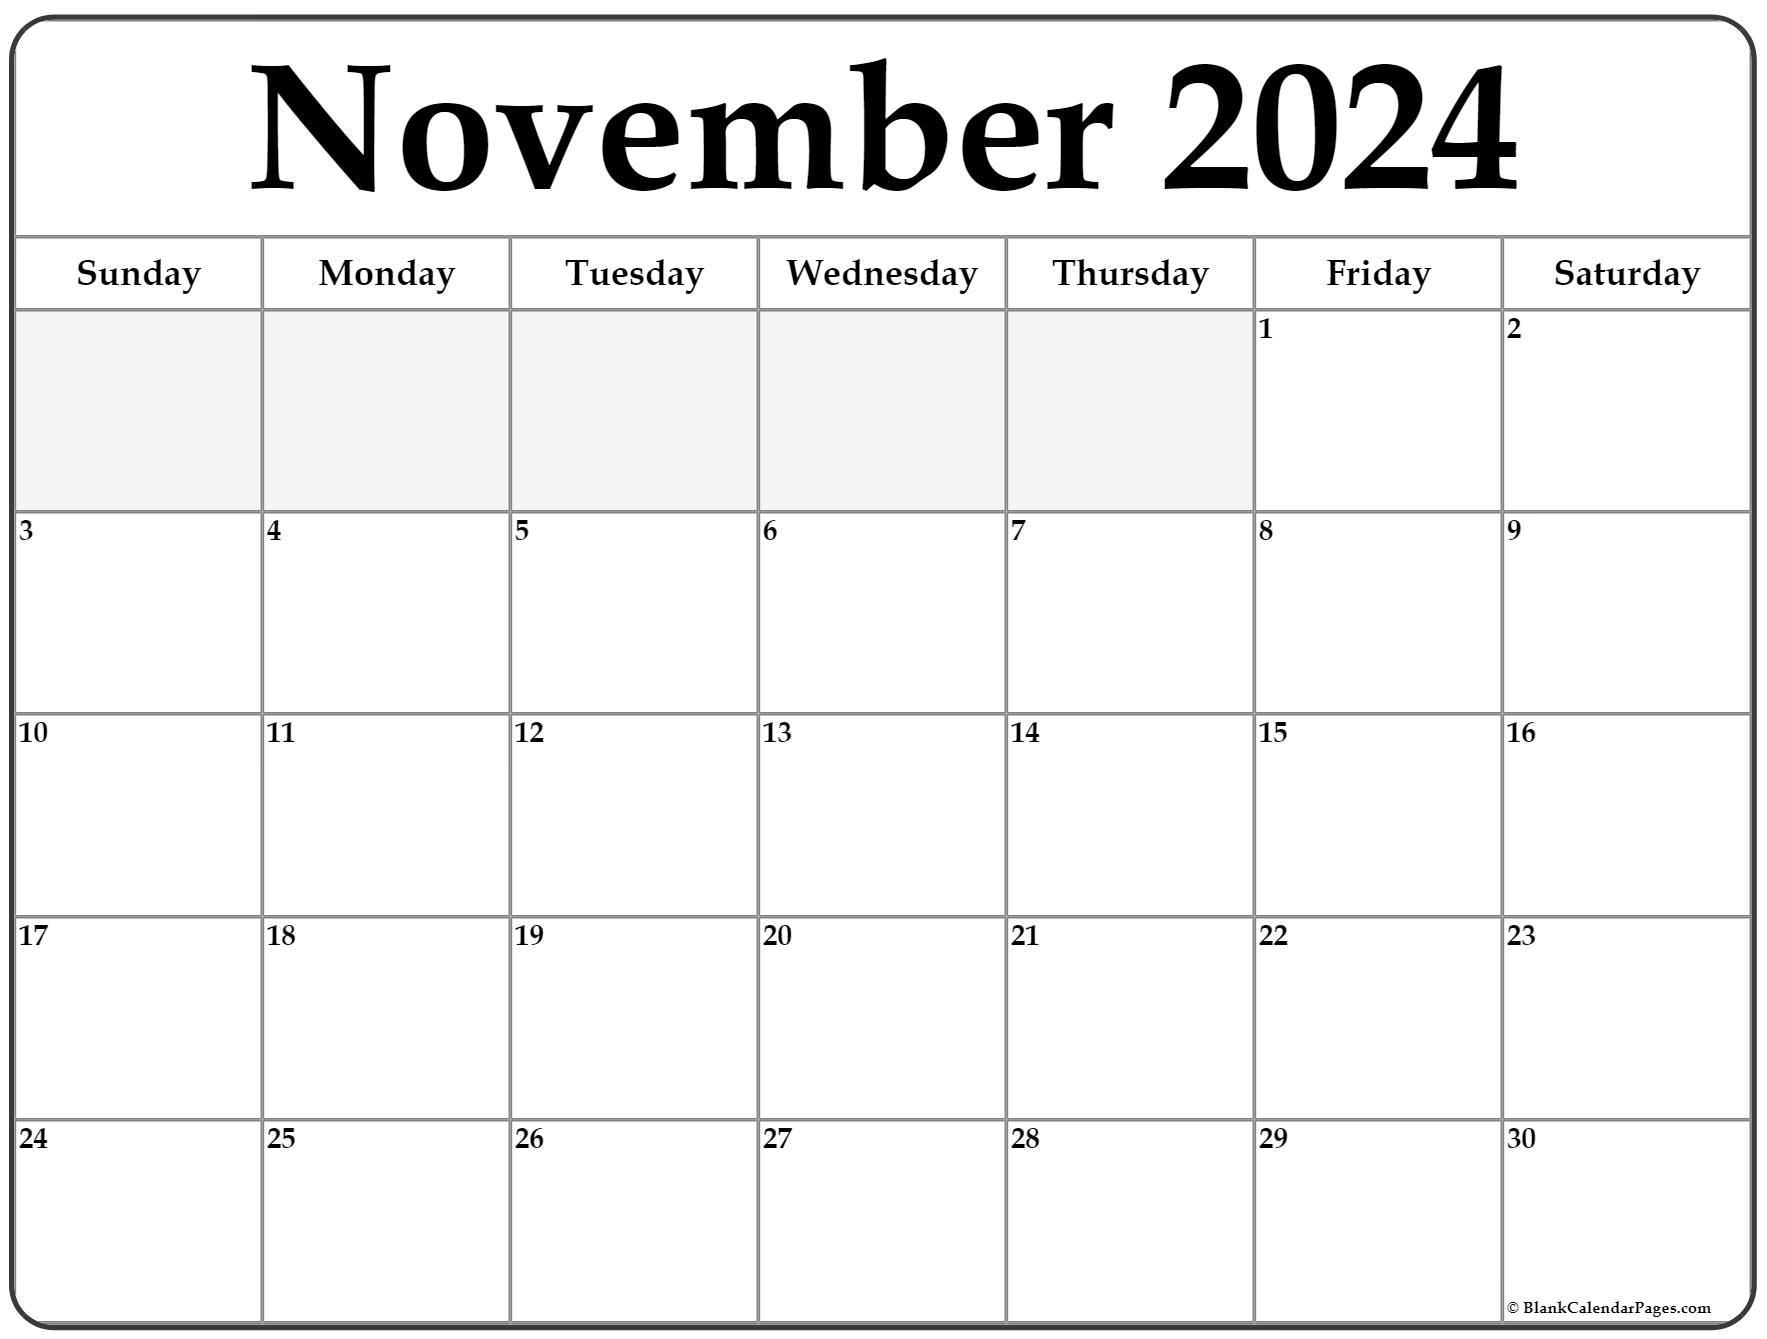 November Calendar Template 2022 November 2022 Calendar | Free Printable Calendar Templates